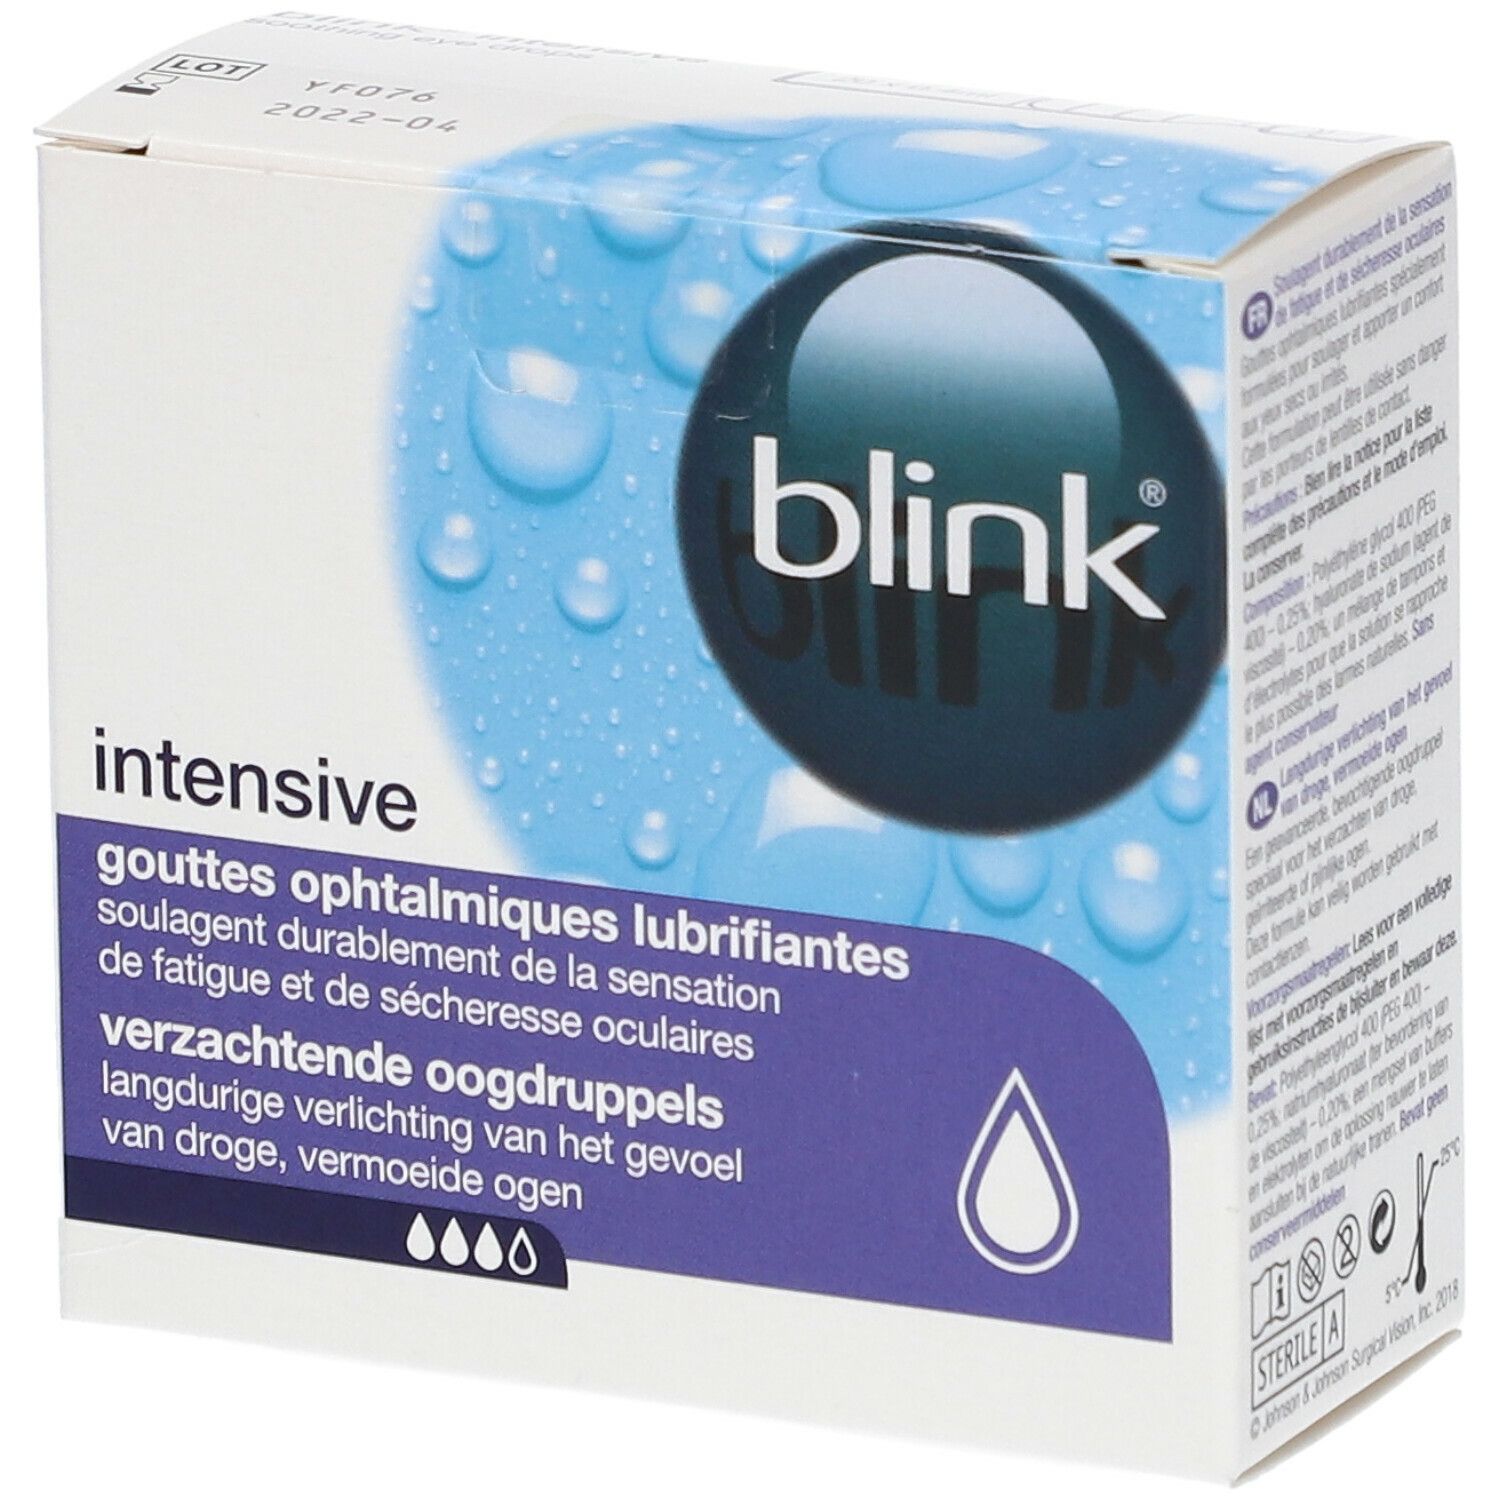 Blink® Intensive Tears Gouttes ophtalmiques lubrifiantes